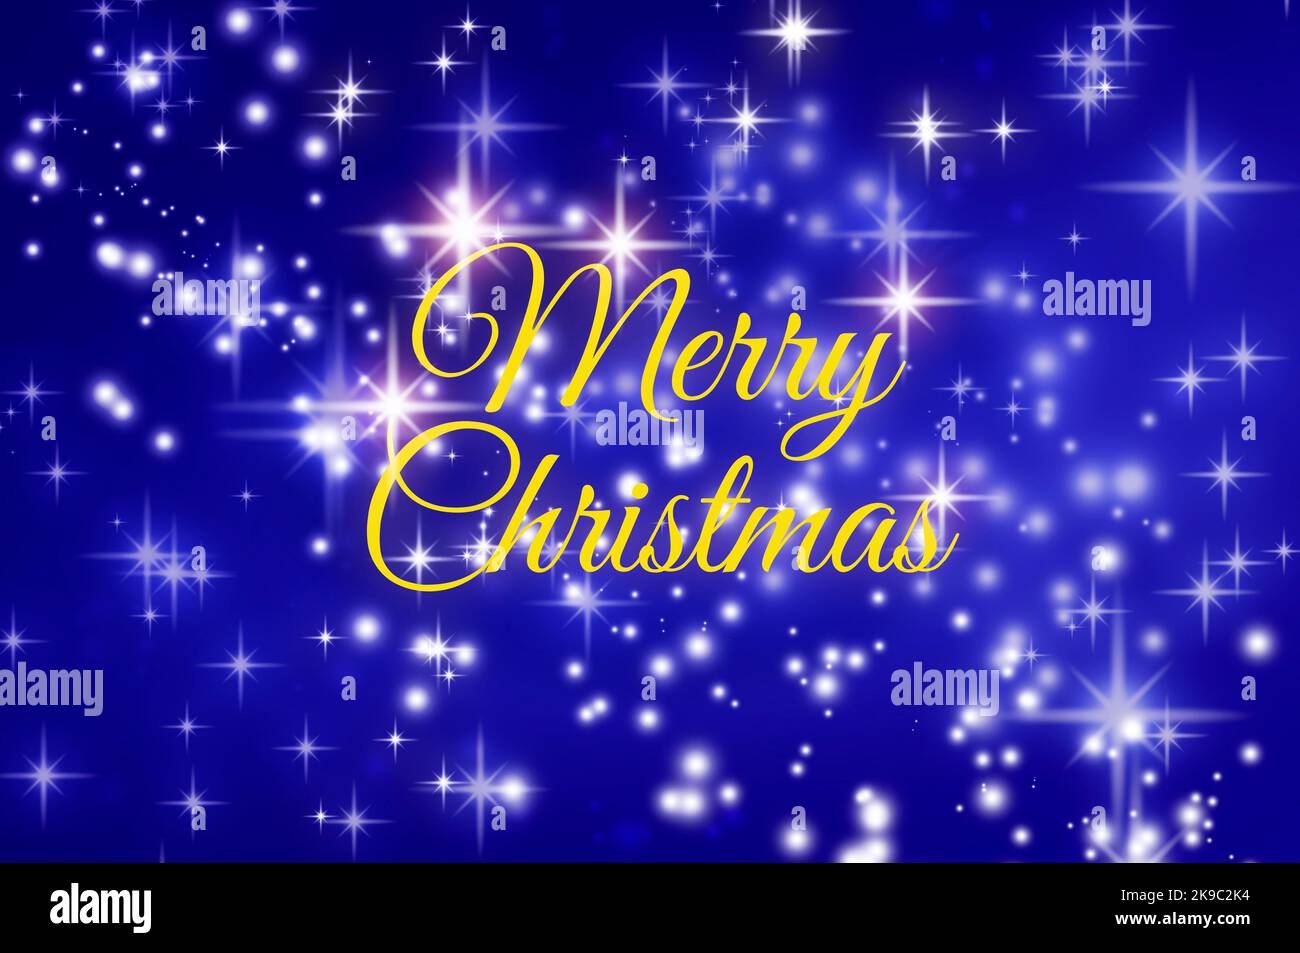 Frohe Weihnachten wünscht Text auf blauem Hintergrund mit leuchtenden Sternen. Weihnachtsfeier Konzept. Stockfoto